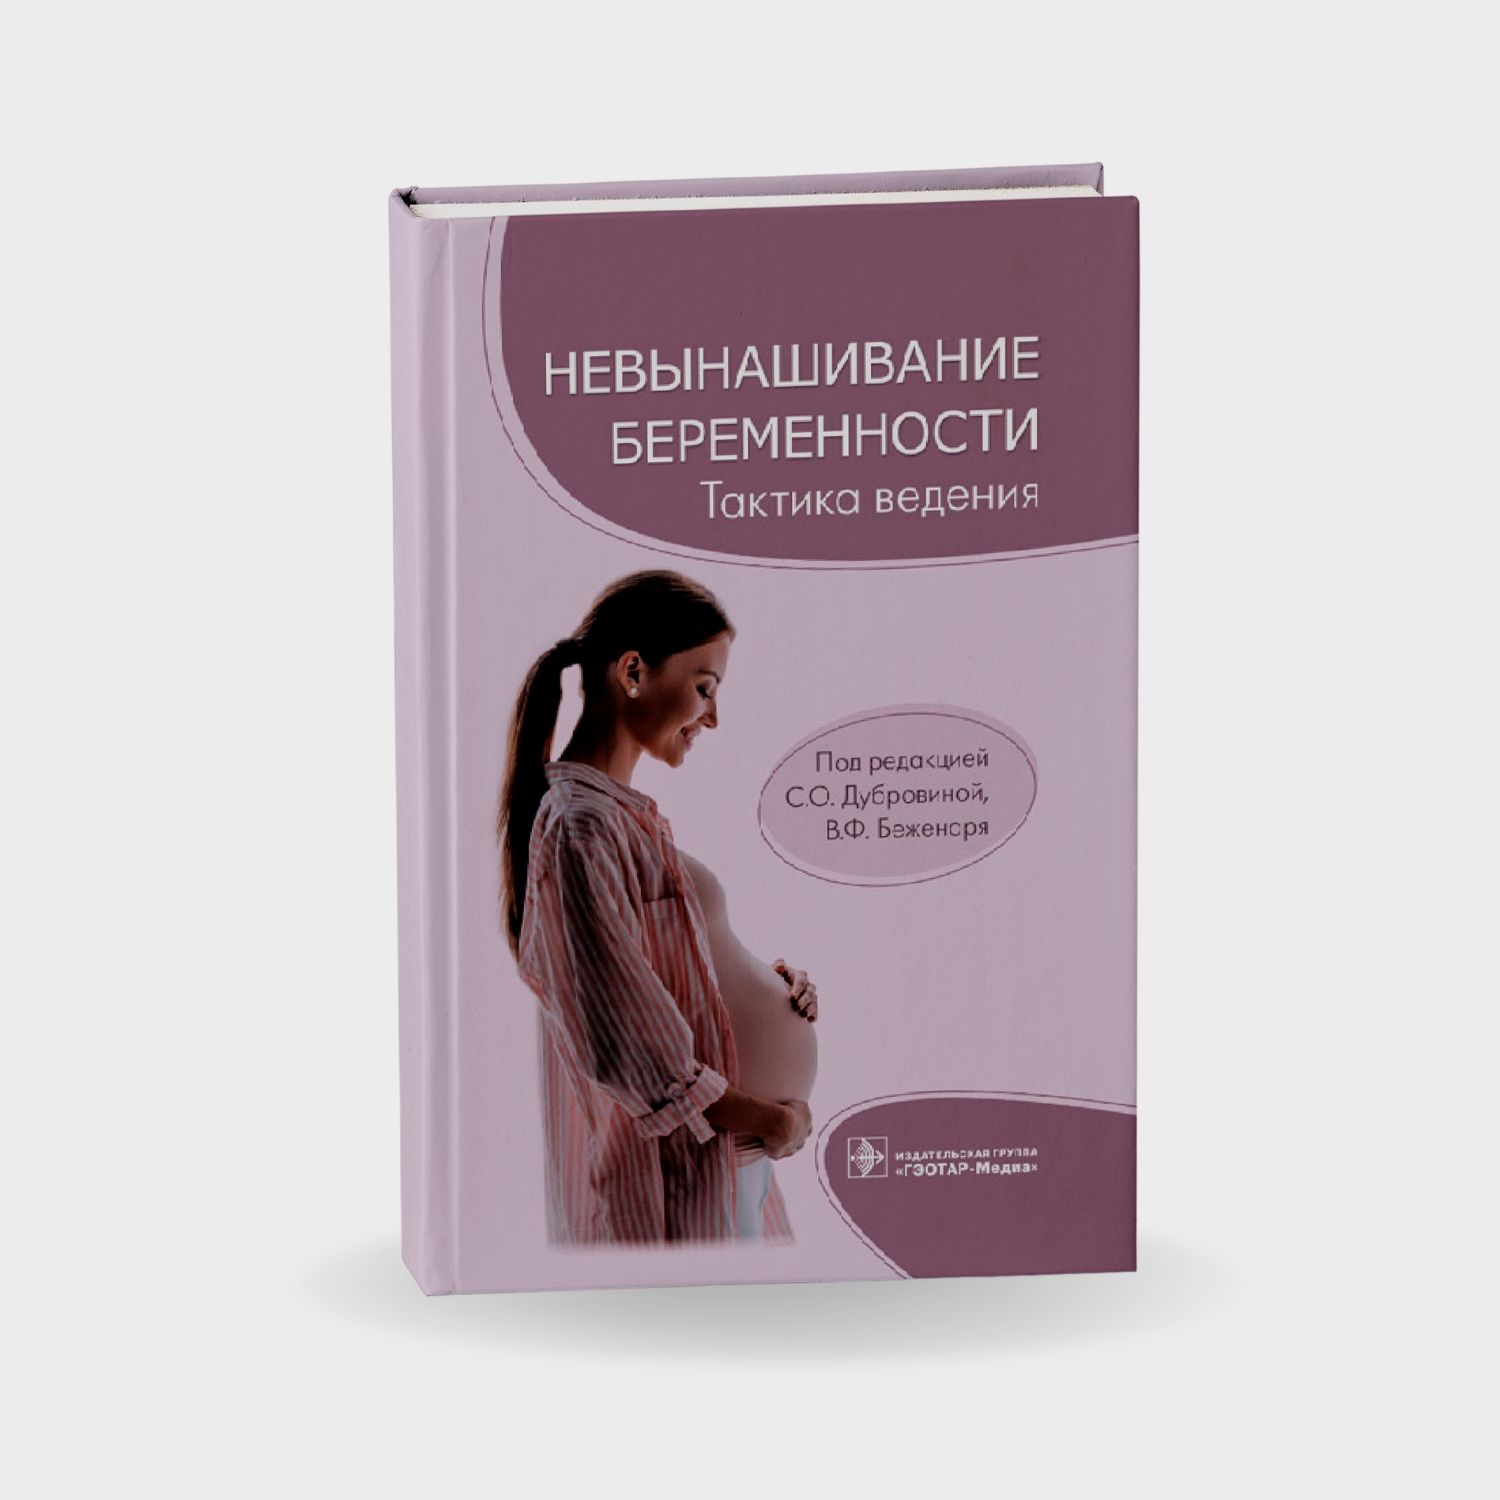 Невынашивание беременности. актика ведения врача акушера-гинеколога. Руководство